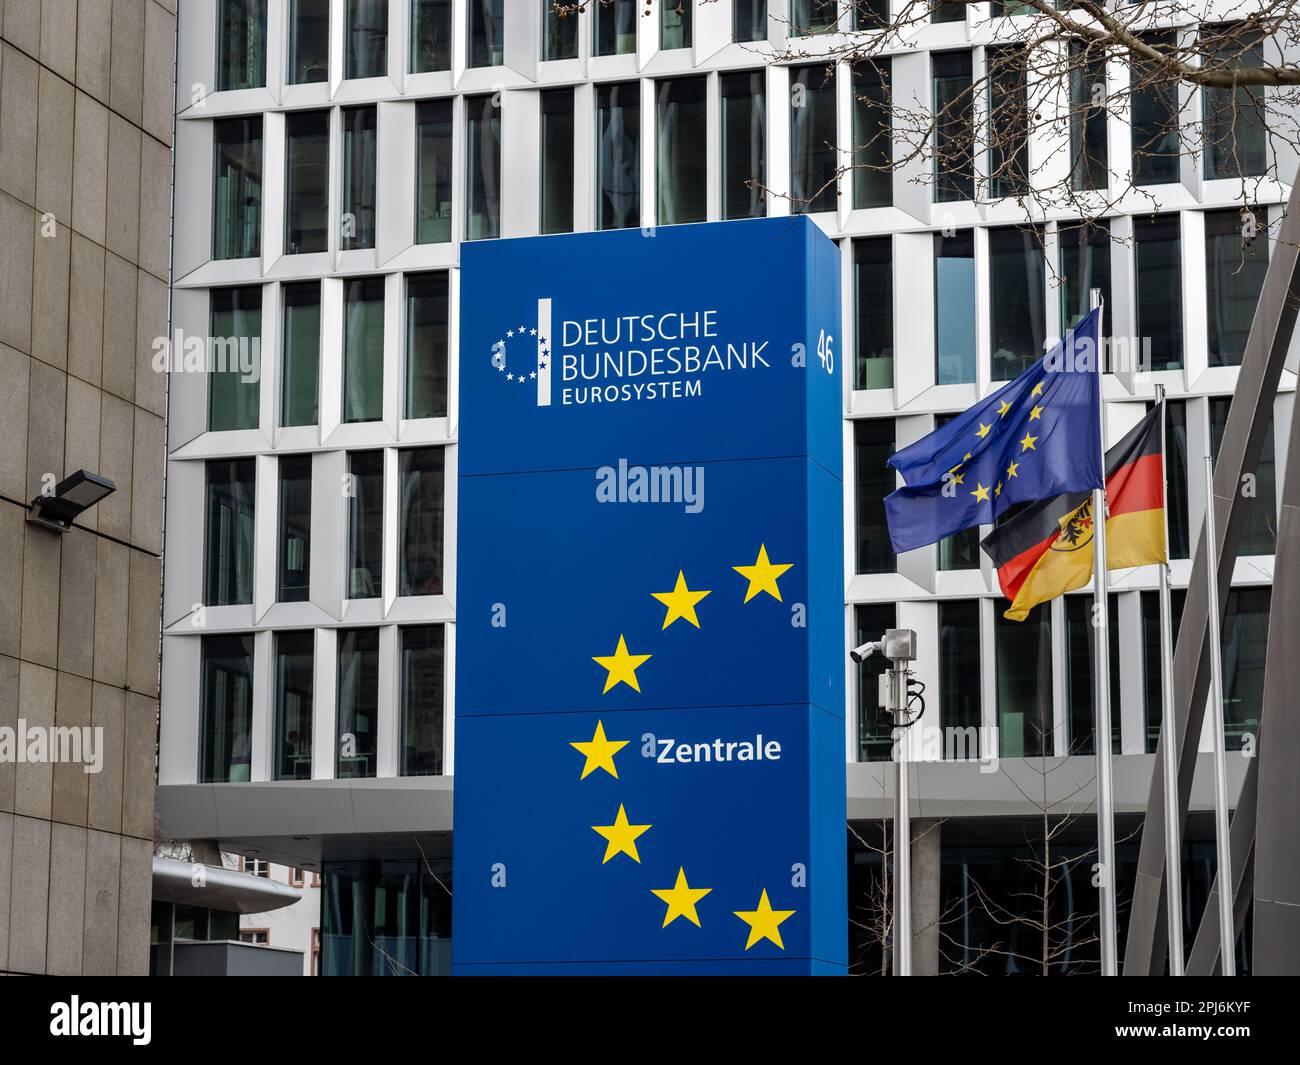 Schild für die Deutsche Bundesbank (Deutsche Bundesbank) vor der Fassade des Gebäudes. Die Zentralbank Deutschlands und Teil des Euro-Systems. Stockfoto